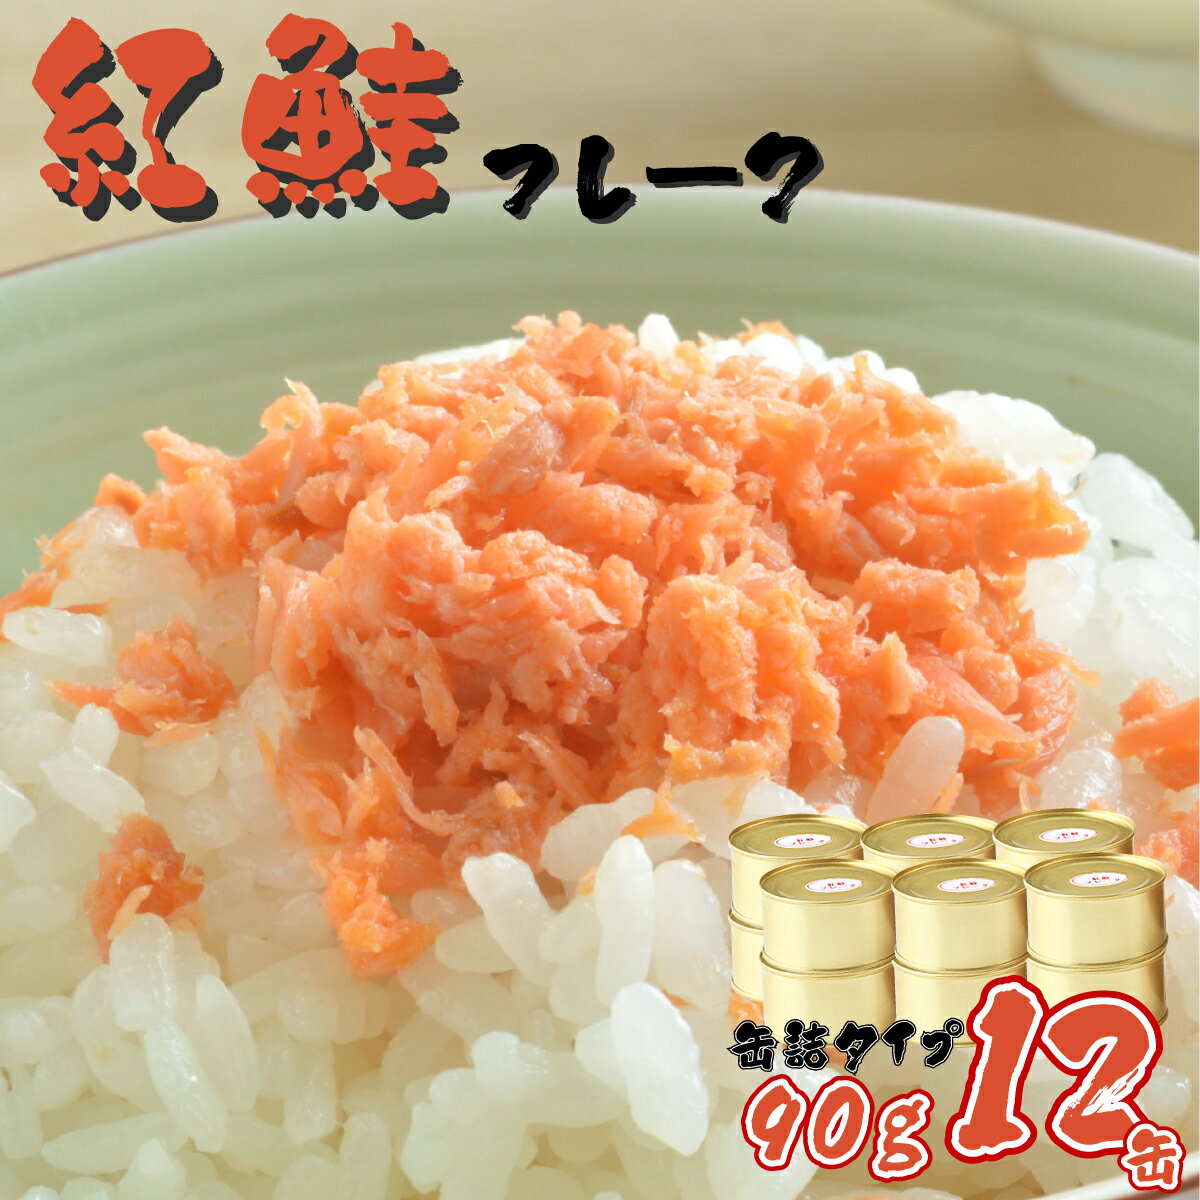 【ふるさと納税】北海道岩内町 紅鮭フレーク90g×12缶 F